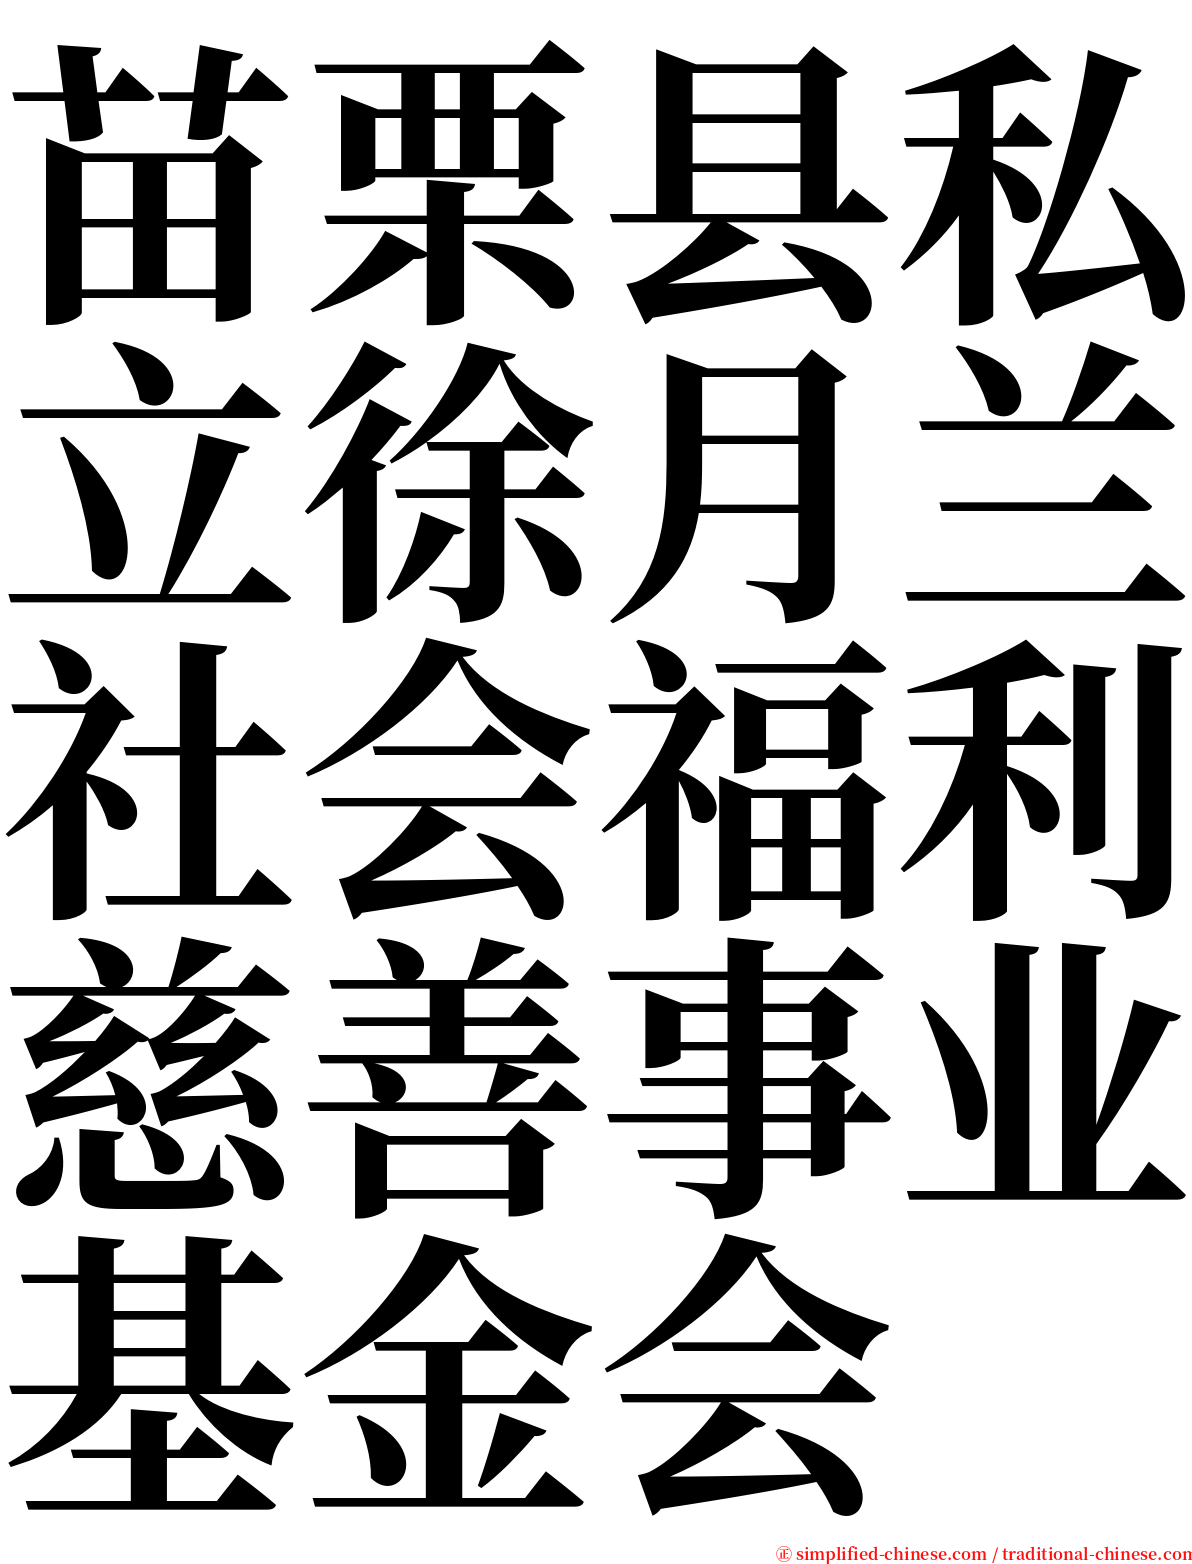 苗栗县私立徐月兰社会福利慈善事业基金会 serif font